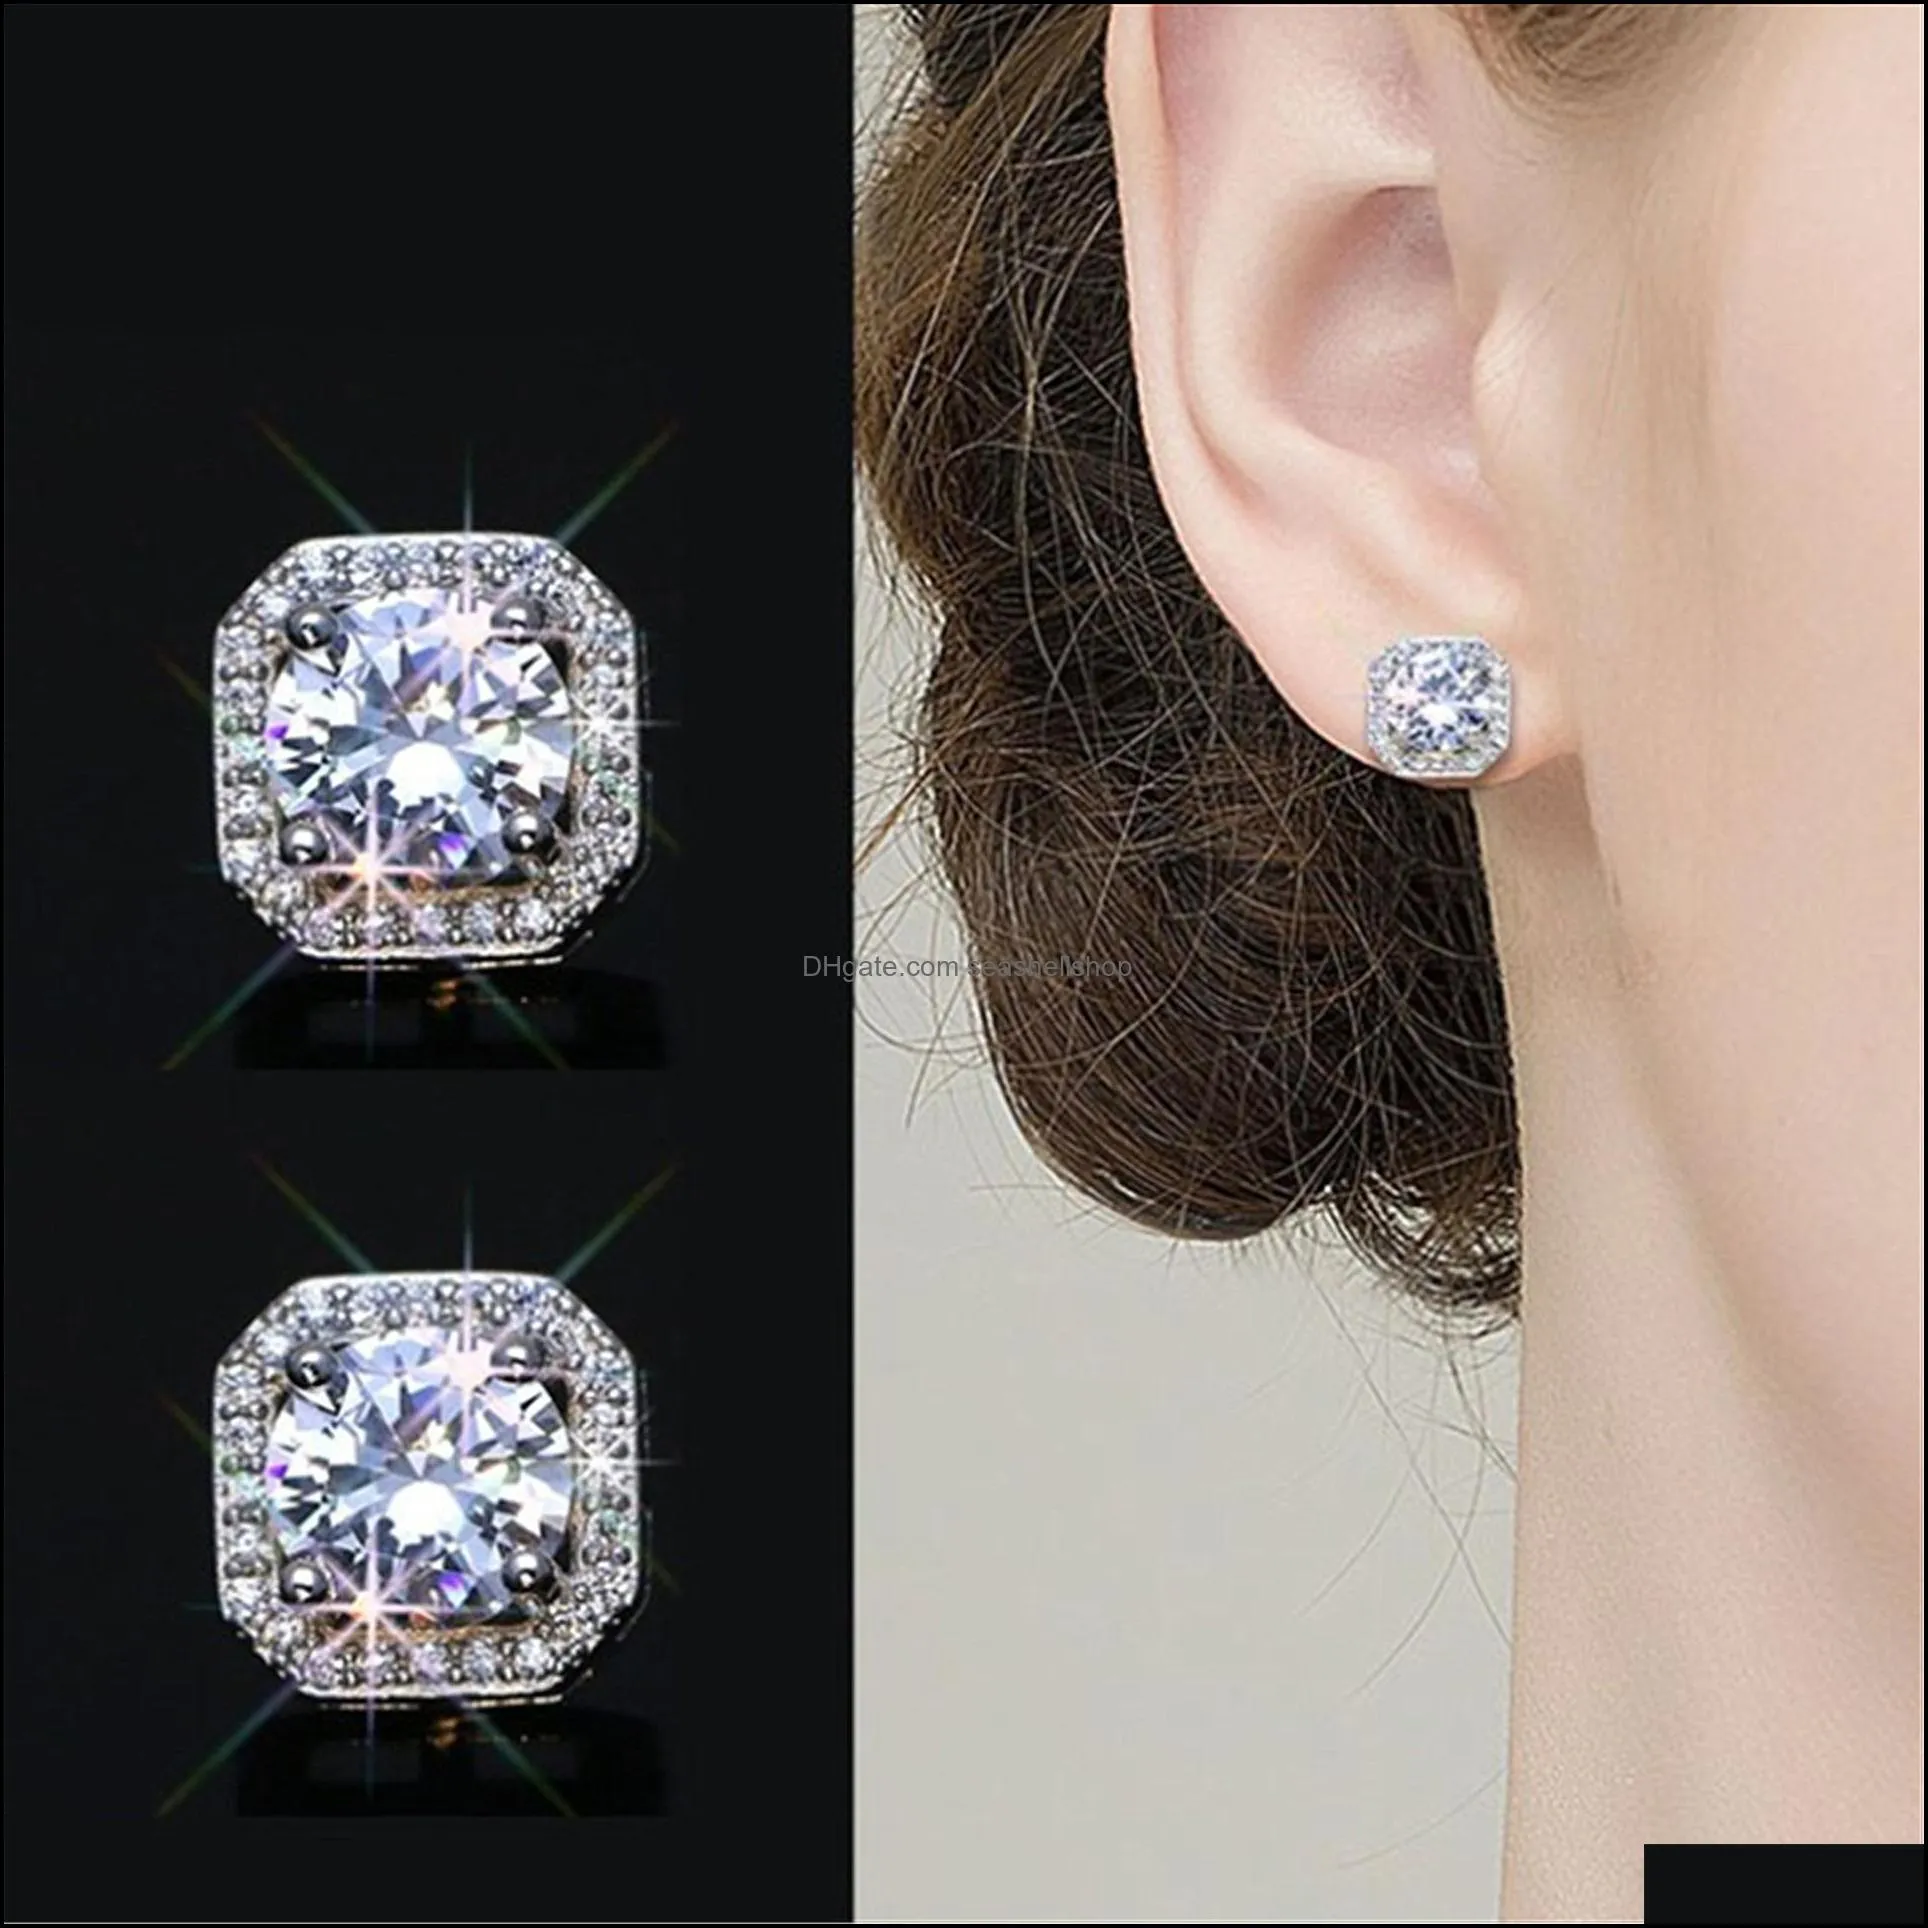 crystals earrings luxury jewelry female crystal zircon stone earrings vintage stud earrings for women gold silver earring